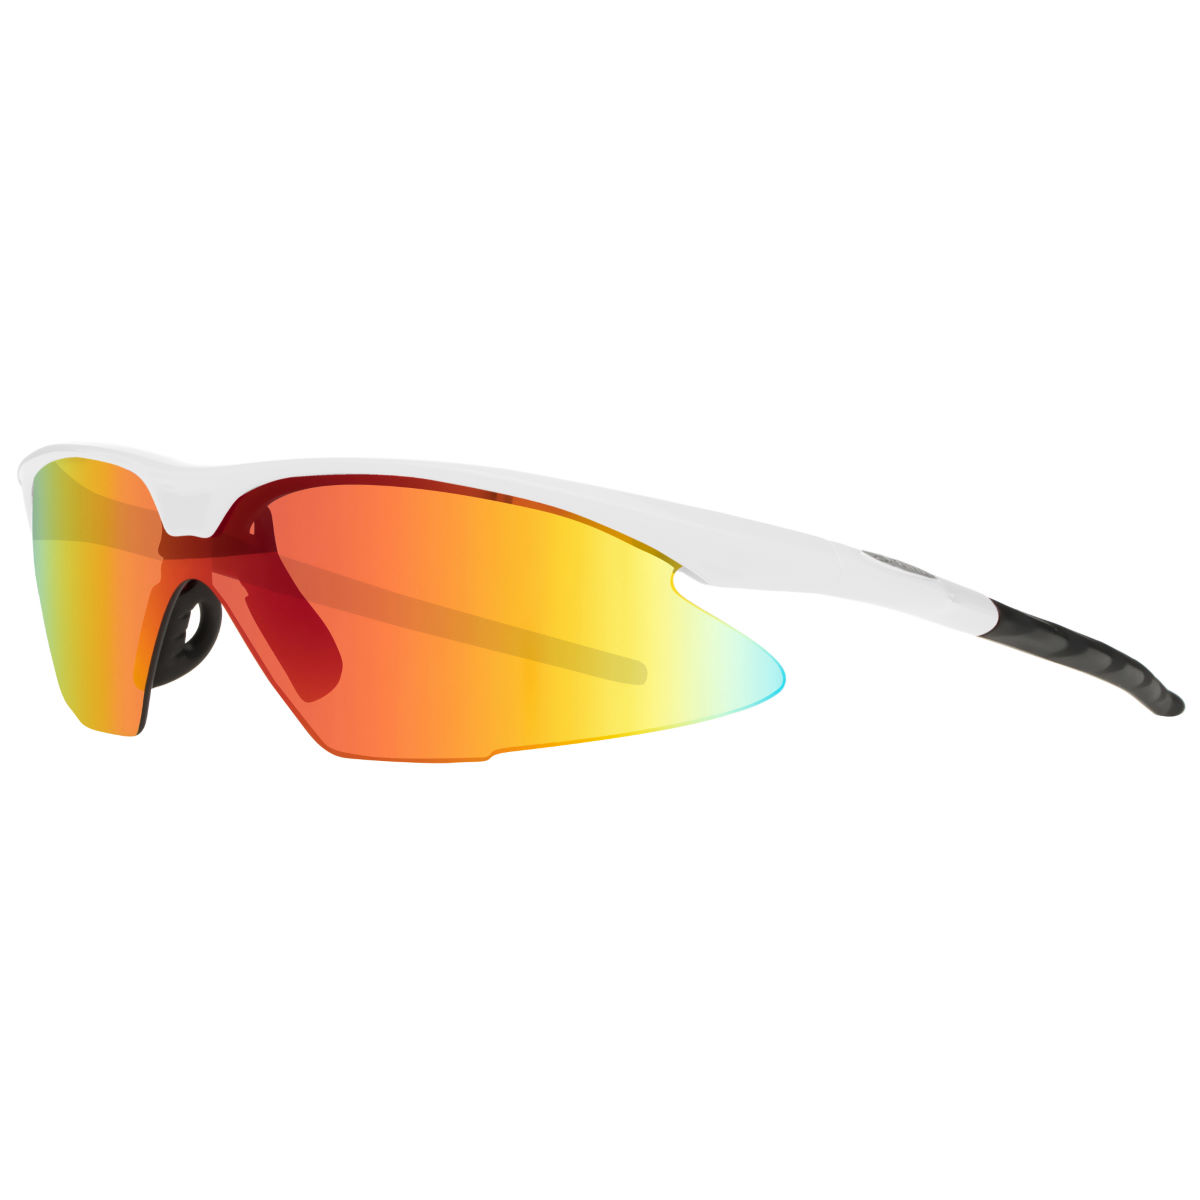 Gafas de sol dhb Pro (3 cristales) - Gafas de sol